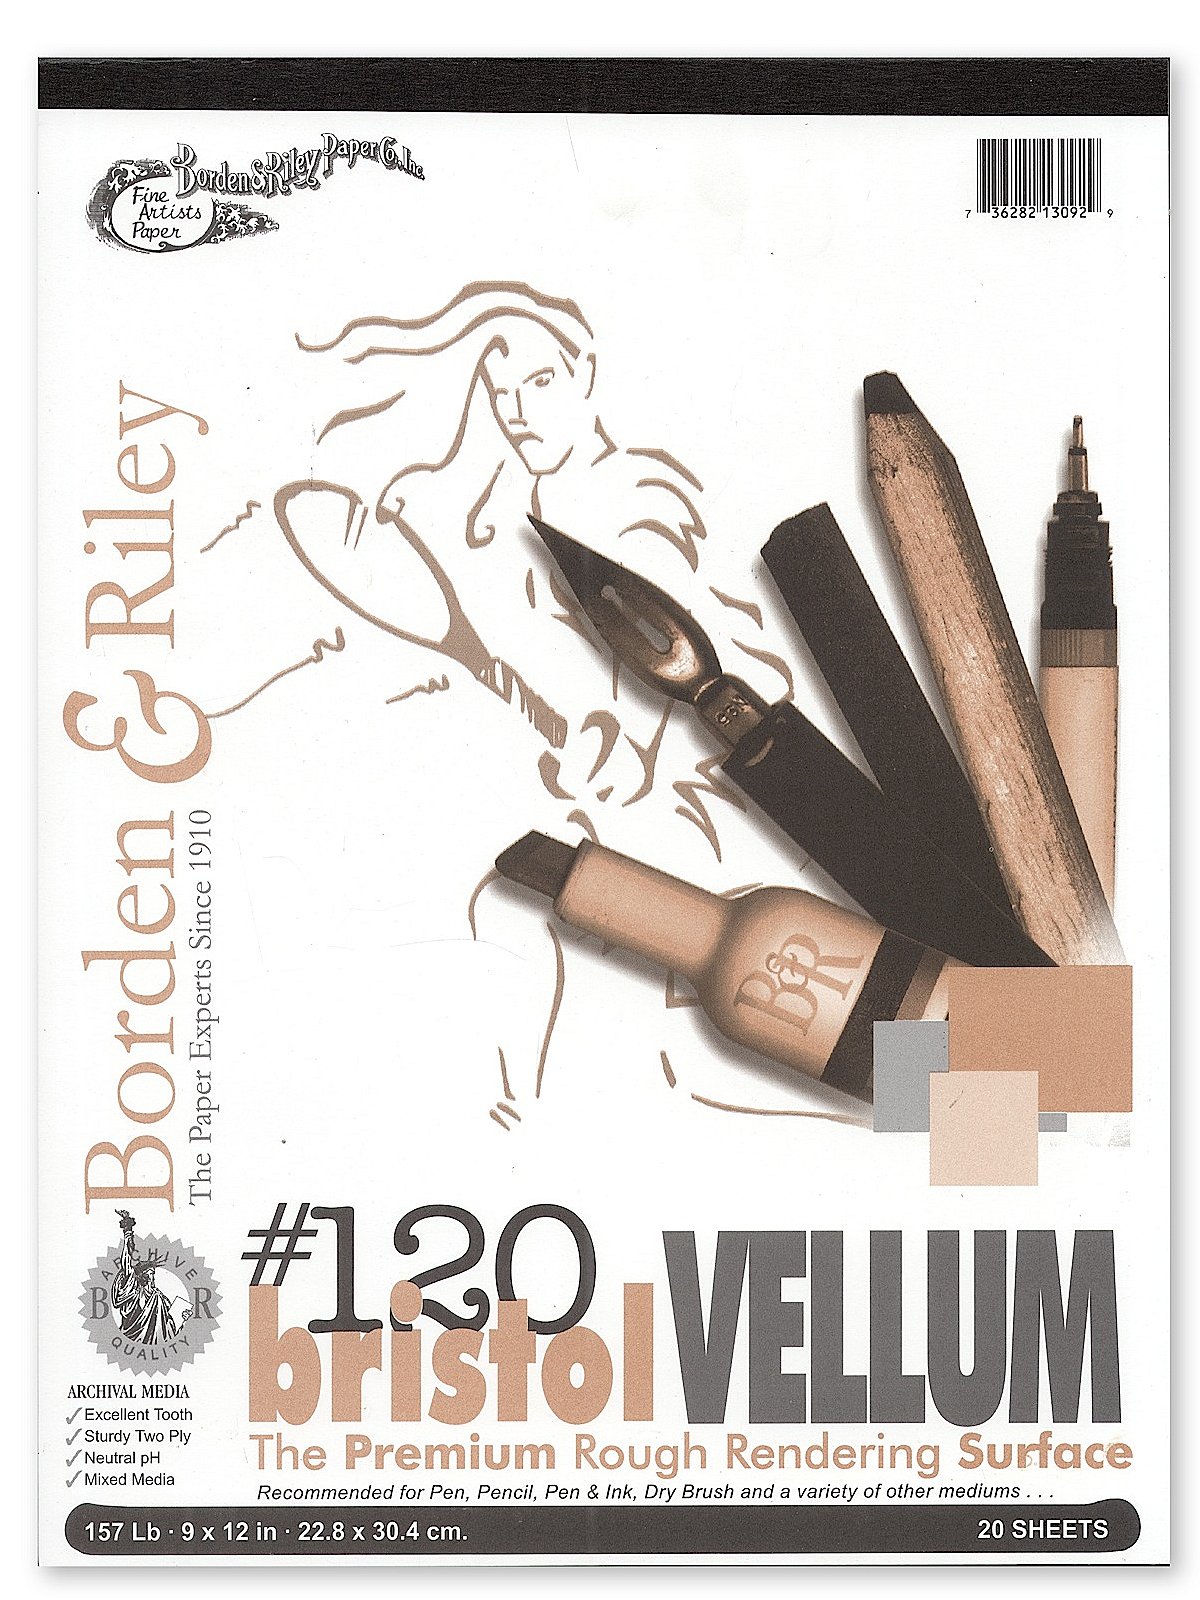 Borden & Riley® No. 120P Bristol Smooth Paper Pad, 9 x 12